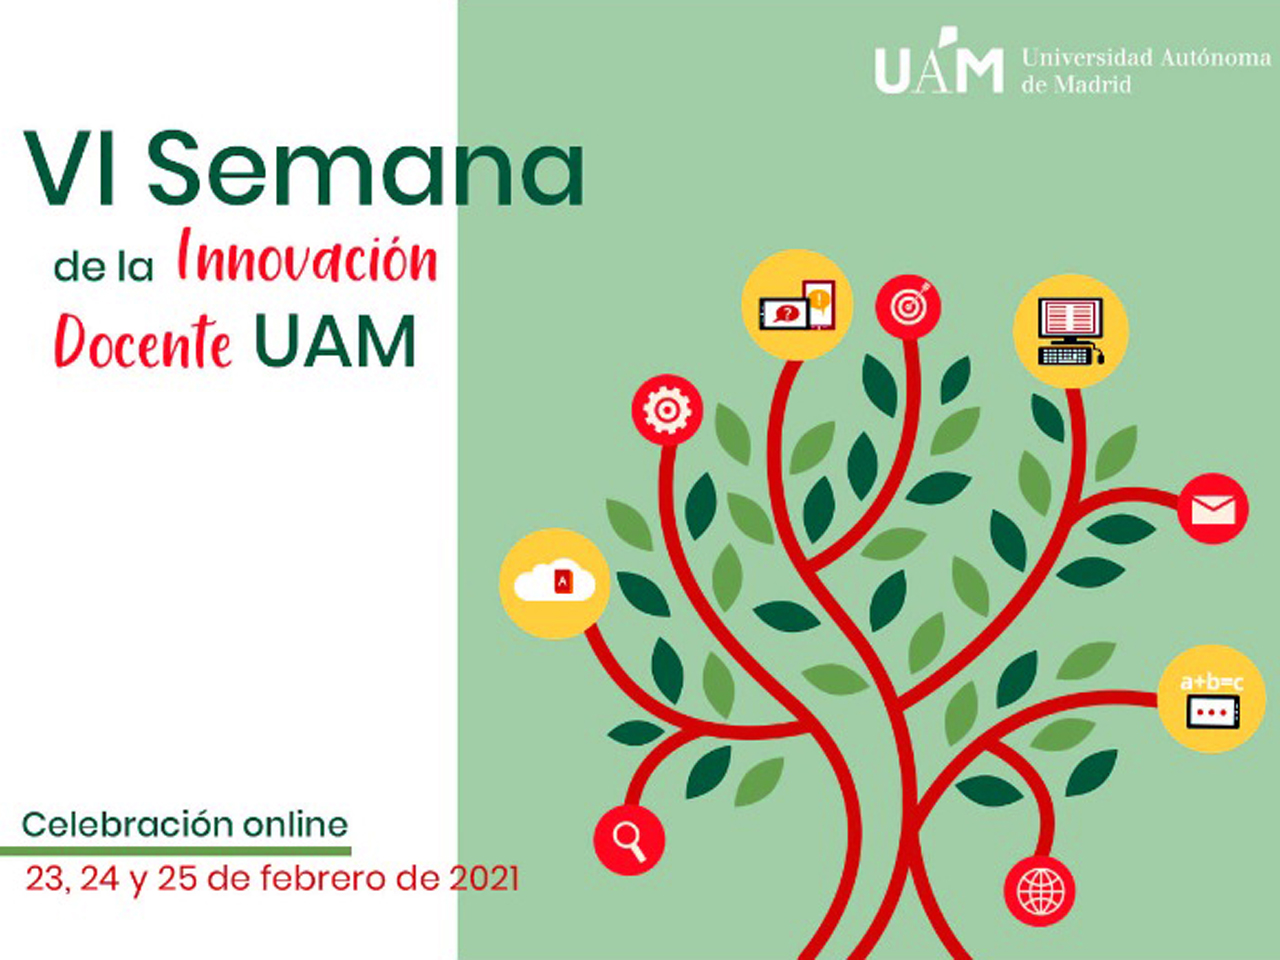 Imagen del cartel de la VI Semana de la Innovación Docente en la UAM, un árbol con iconos relacionados en las ramas